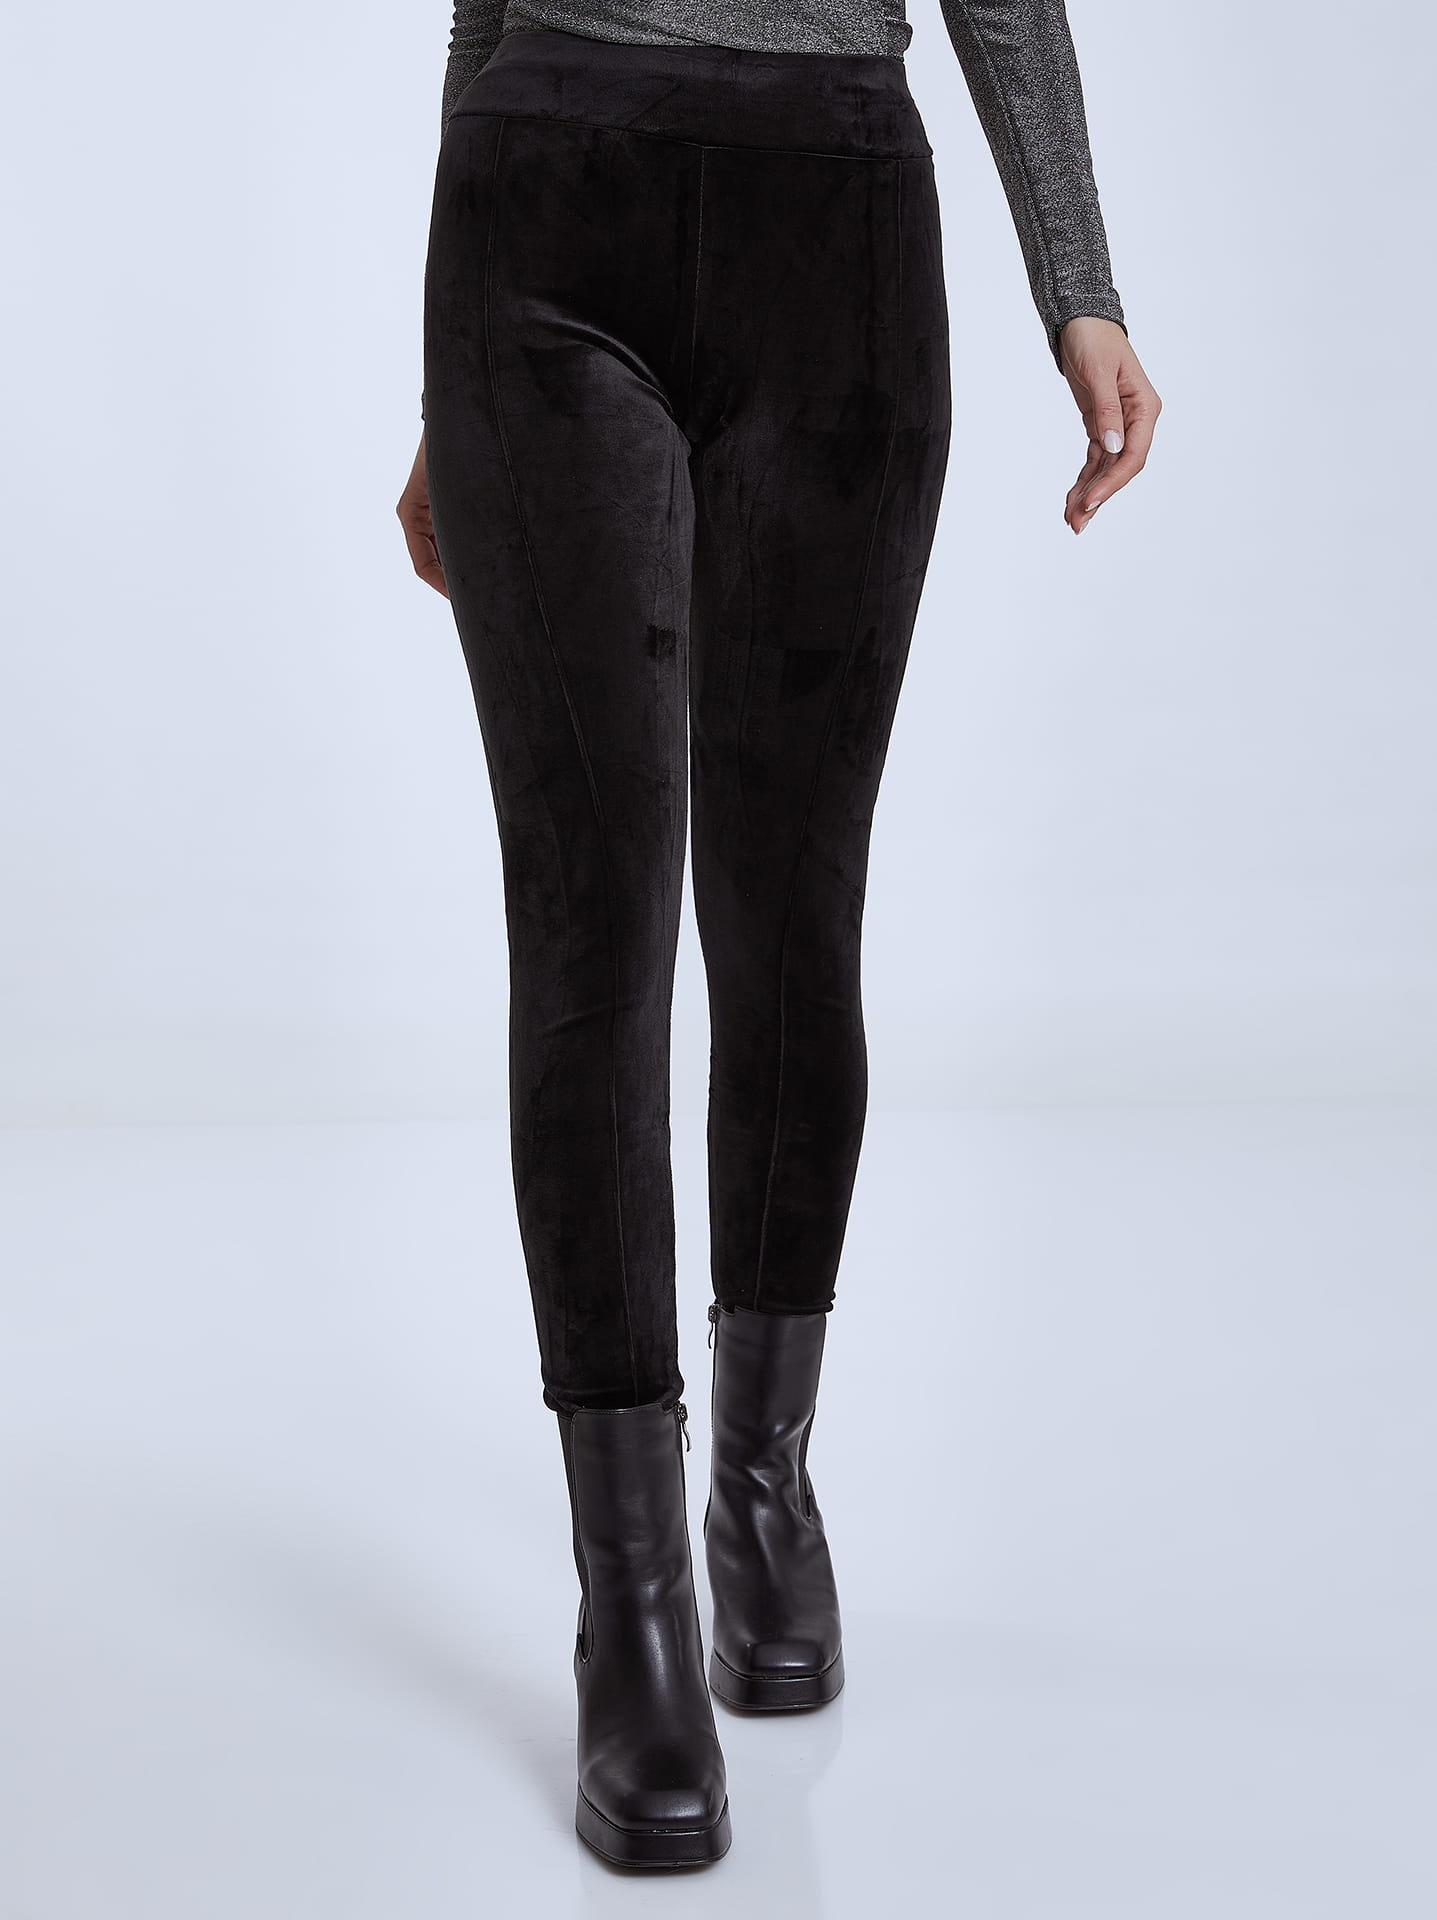 black velvet leggings